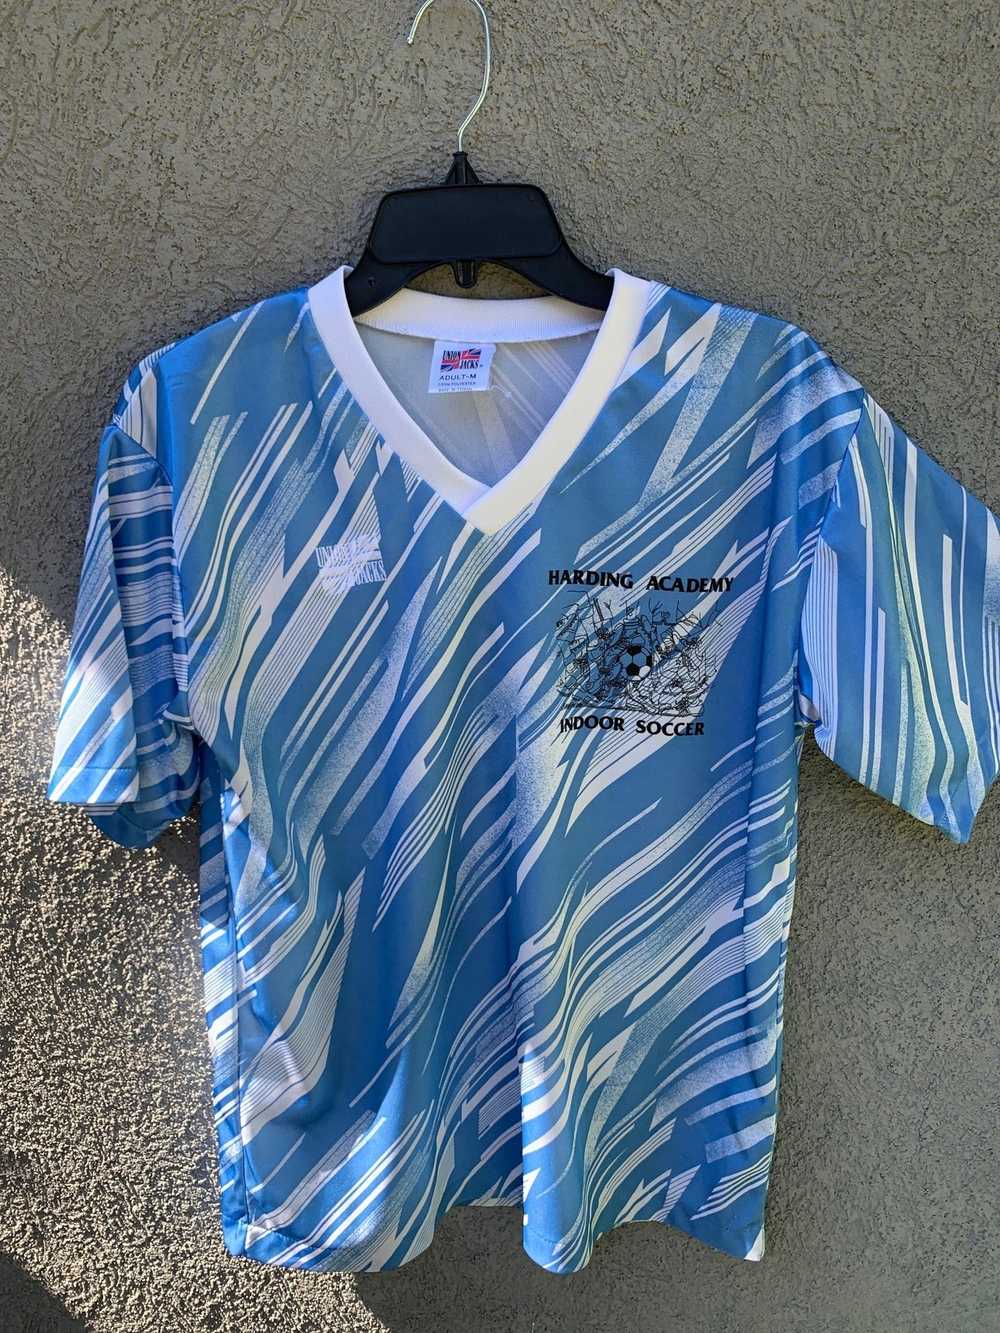 Soccer Jersey × Vintage Vintage 90's Indoor Socce… - image 1